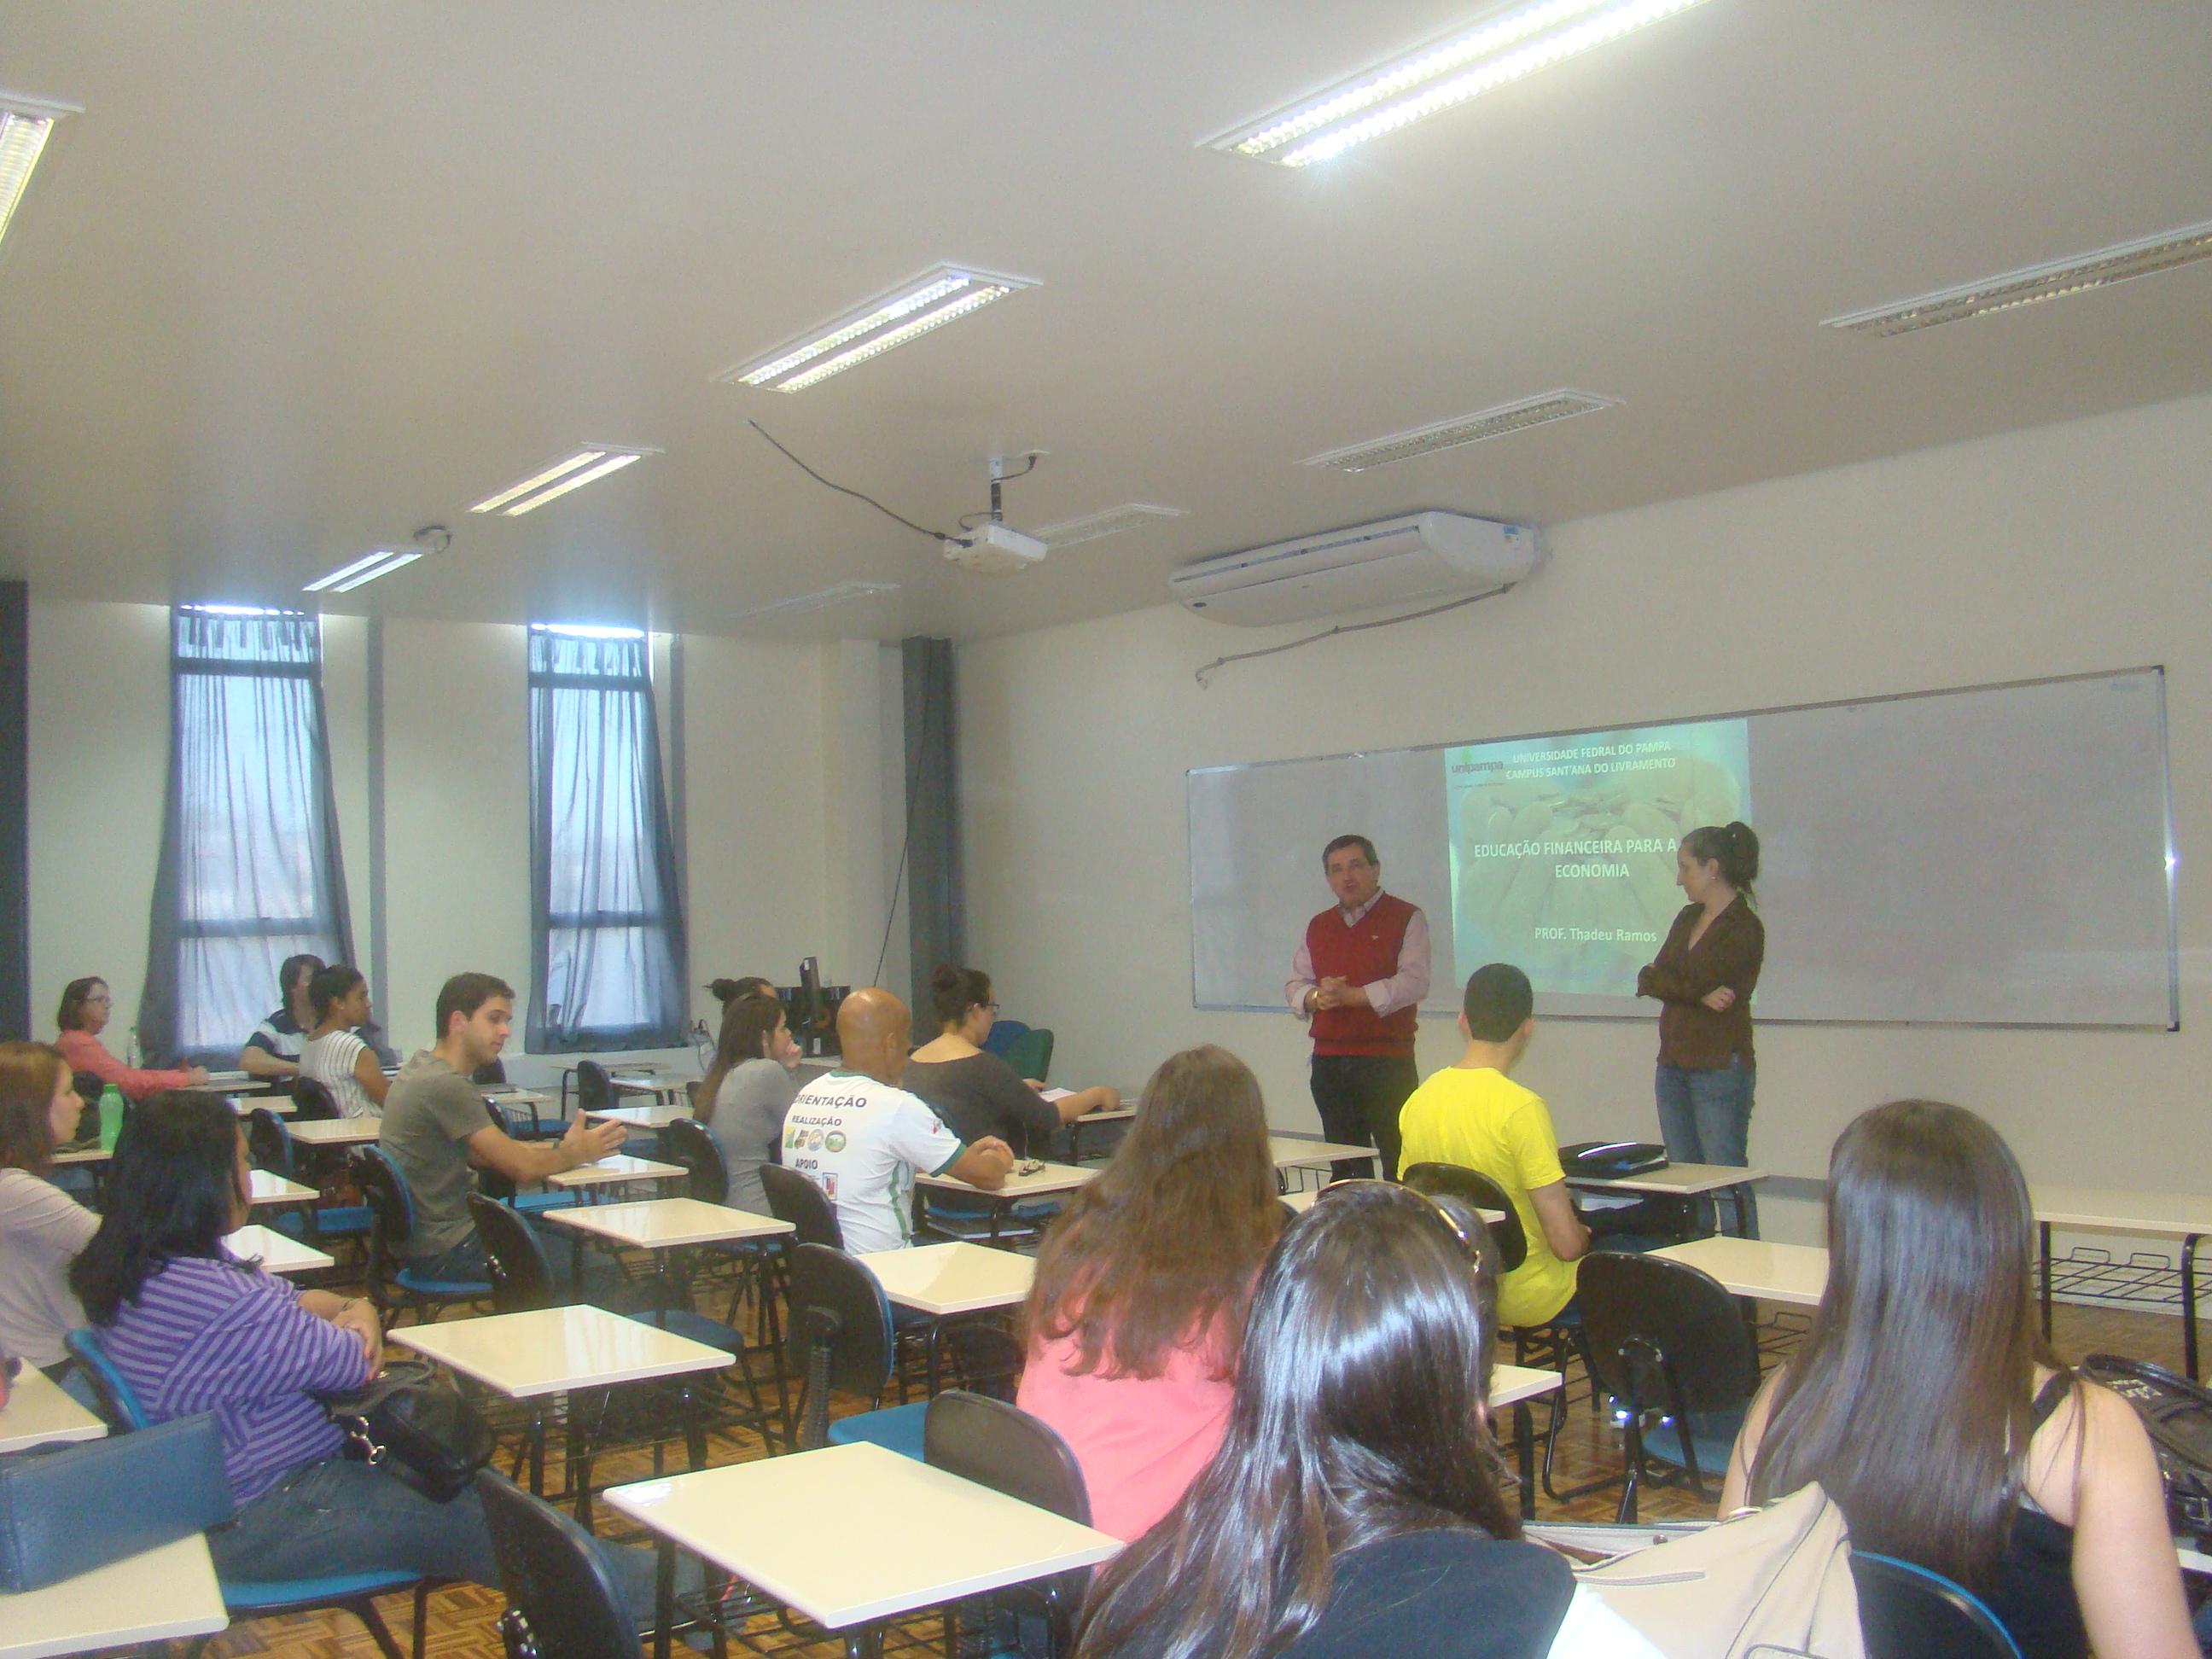 alunos sentados em uma sala de aula olham para dois professores que explicam a proposta do curso, com uma projeção ao fundo.